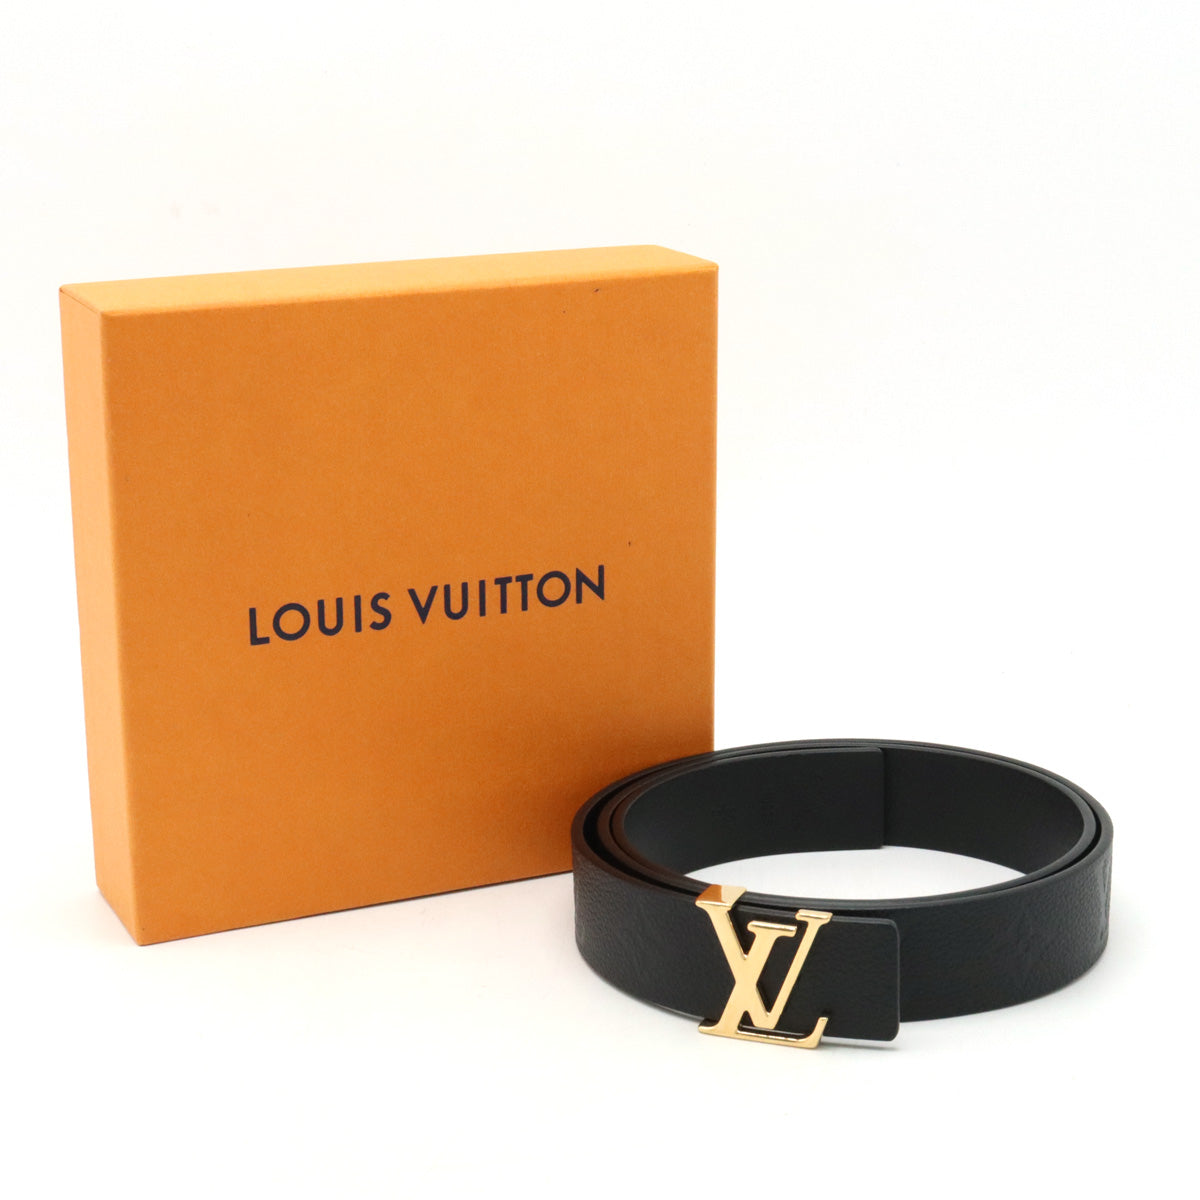 LOUIS VUITTON Louis Vuitton Monogram Emplant Belt LV iconic 30MM Reverseible Black Noneir Black 